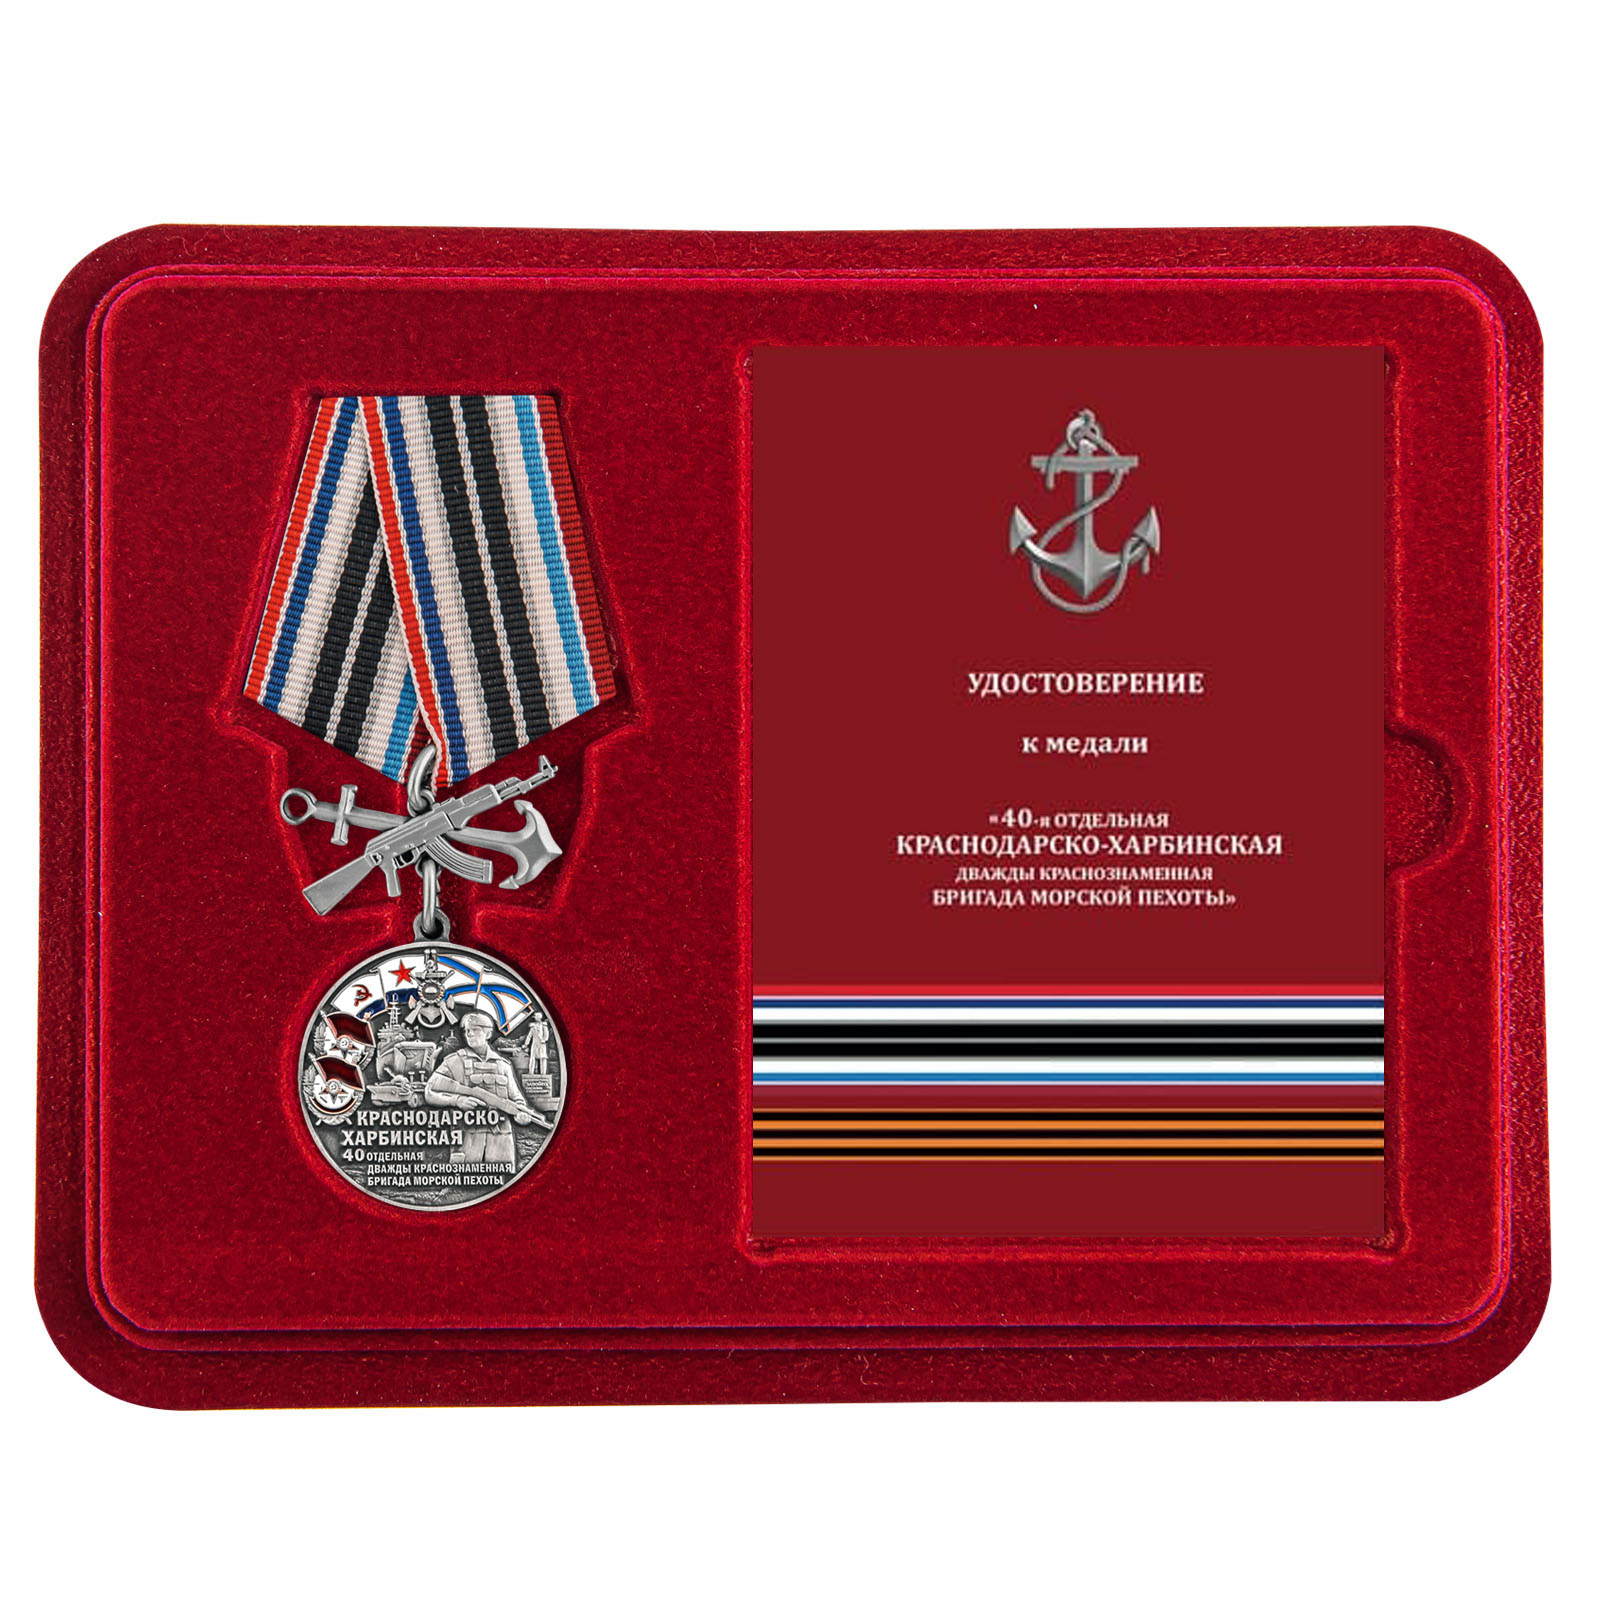 Купить медаль 40-я Краснодарско-Харбинская бригада морской пехоты выгодно